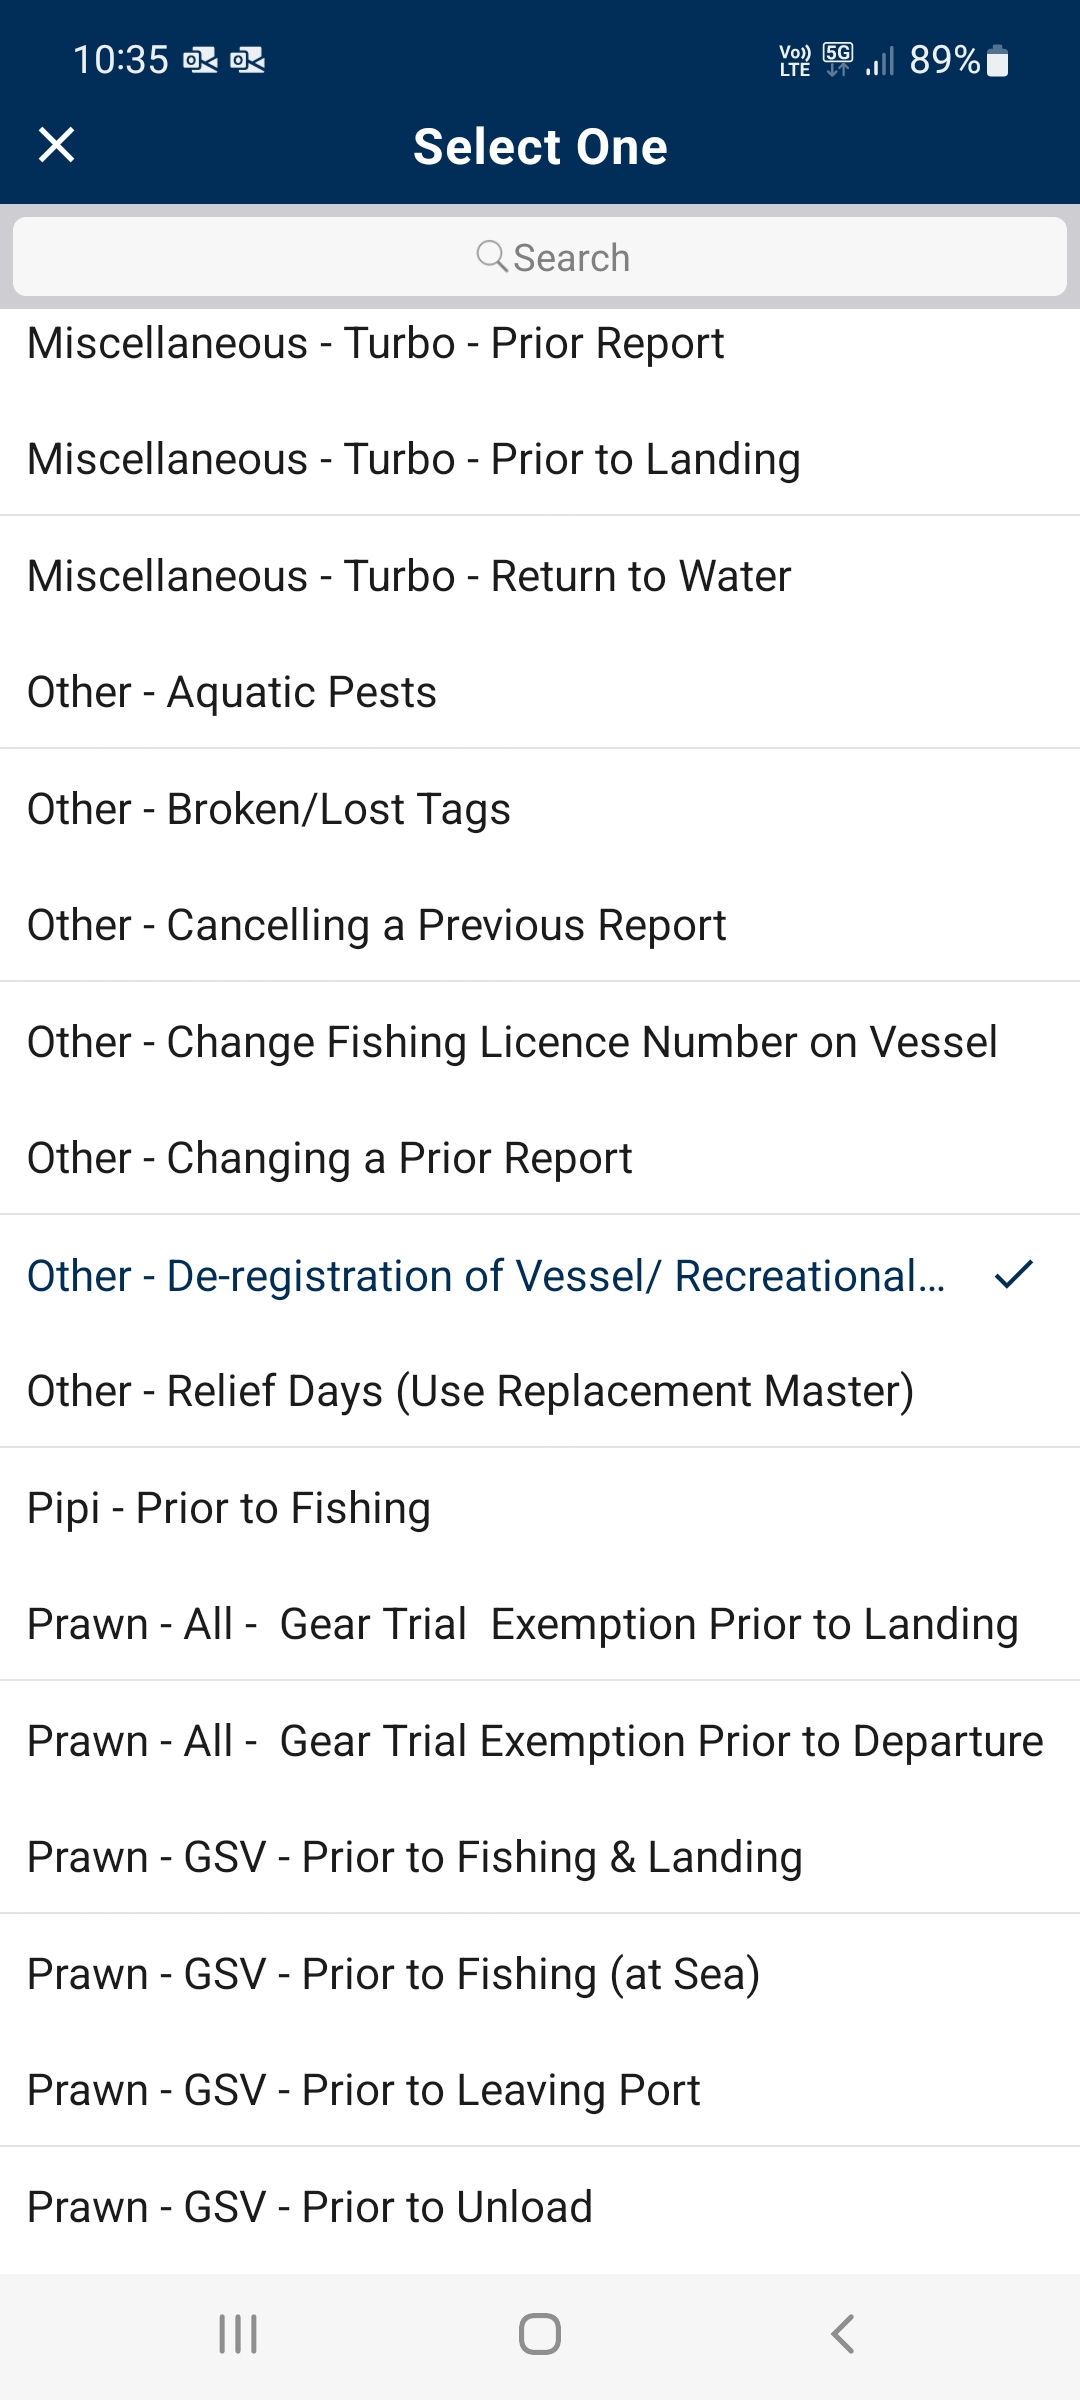 Screen capture of selecting De-registration of Vessel report in the app.